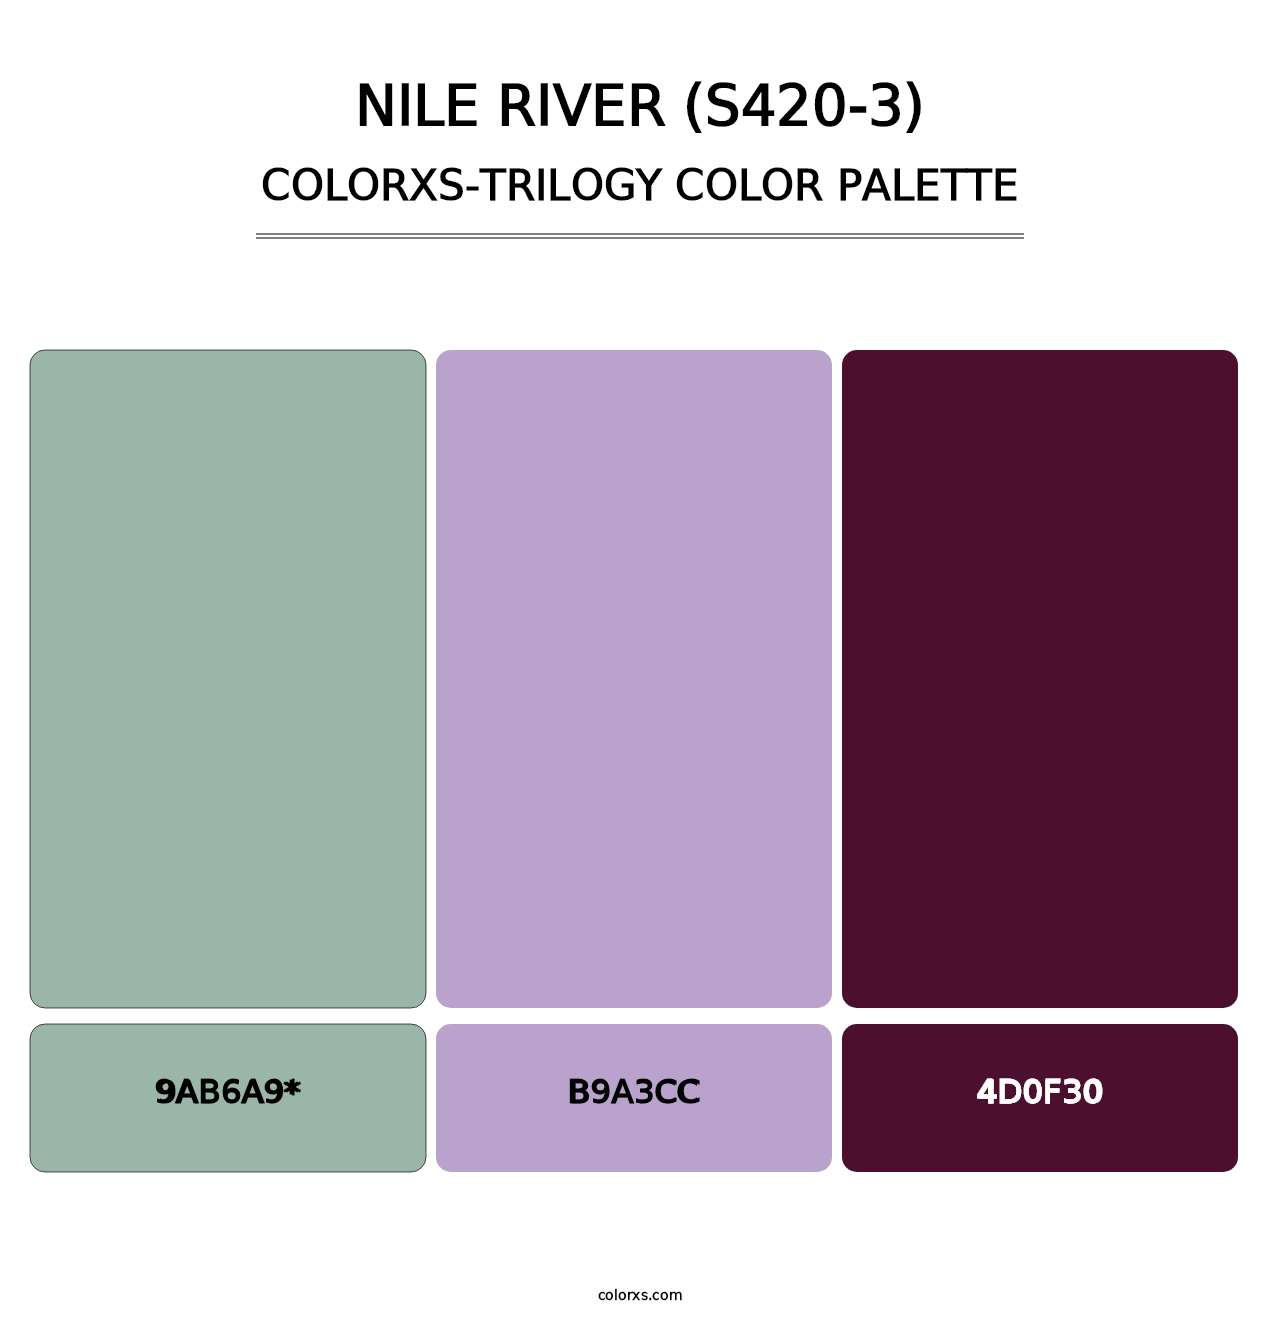 Nile River (S420-3) - Colorxs Trilogy Palette